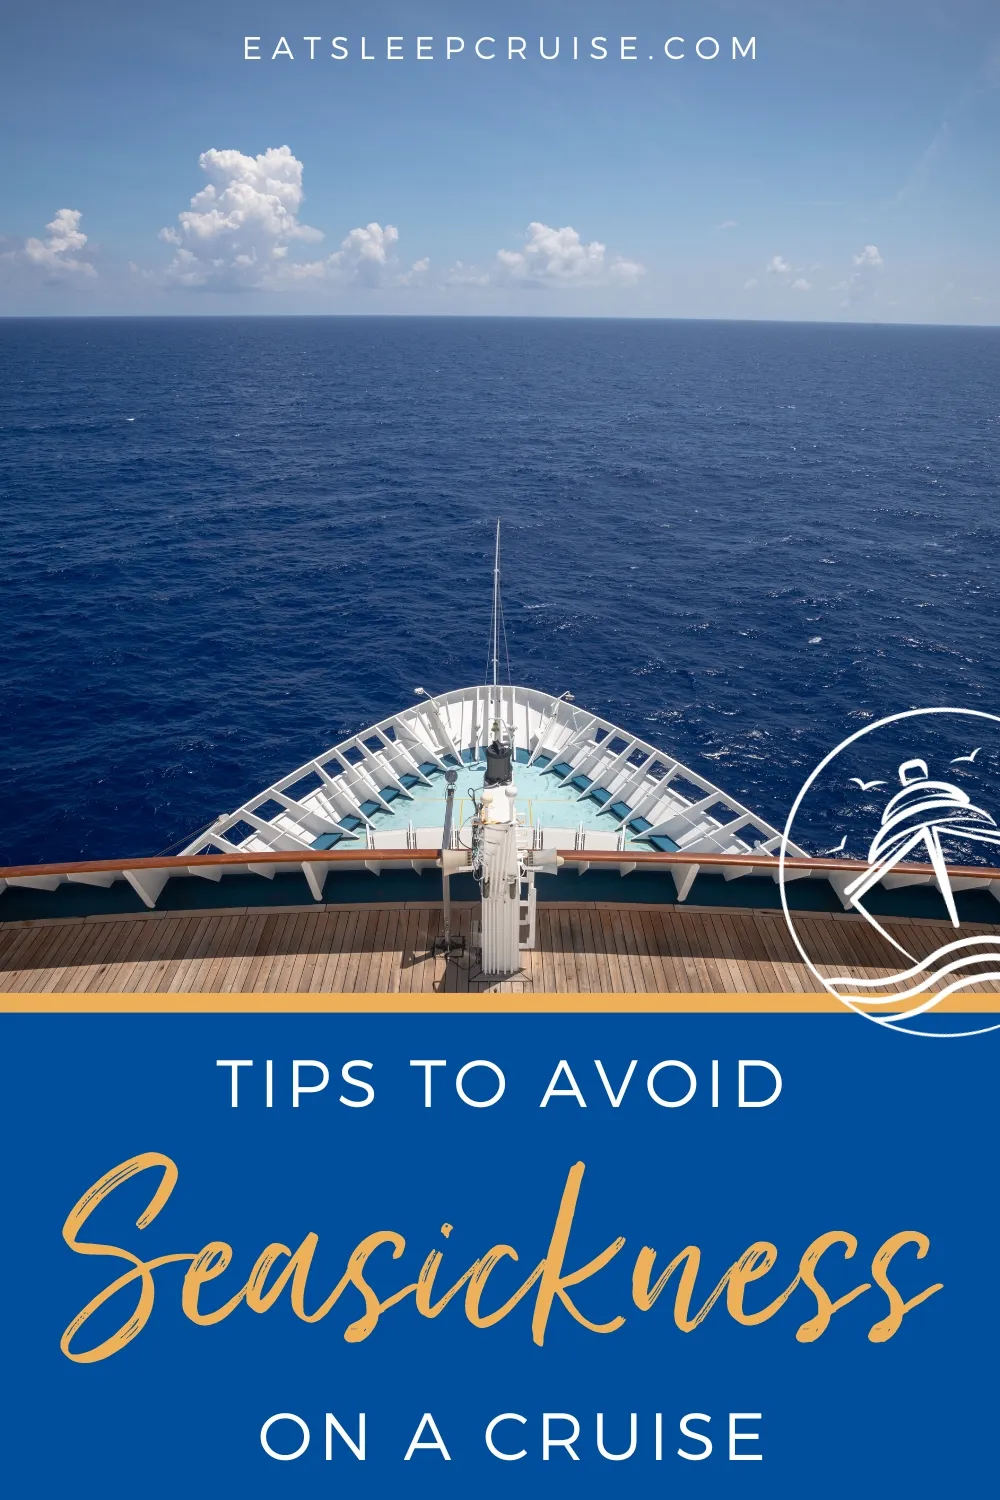 7 Simple Ways to Avoid Seasickness on a Cruise